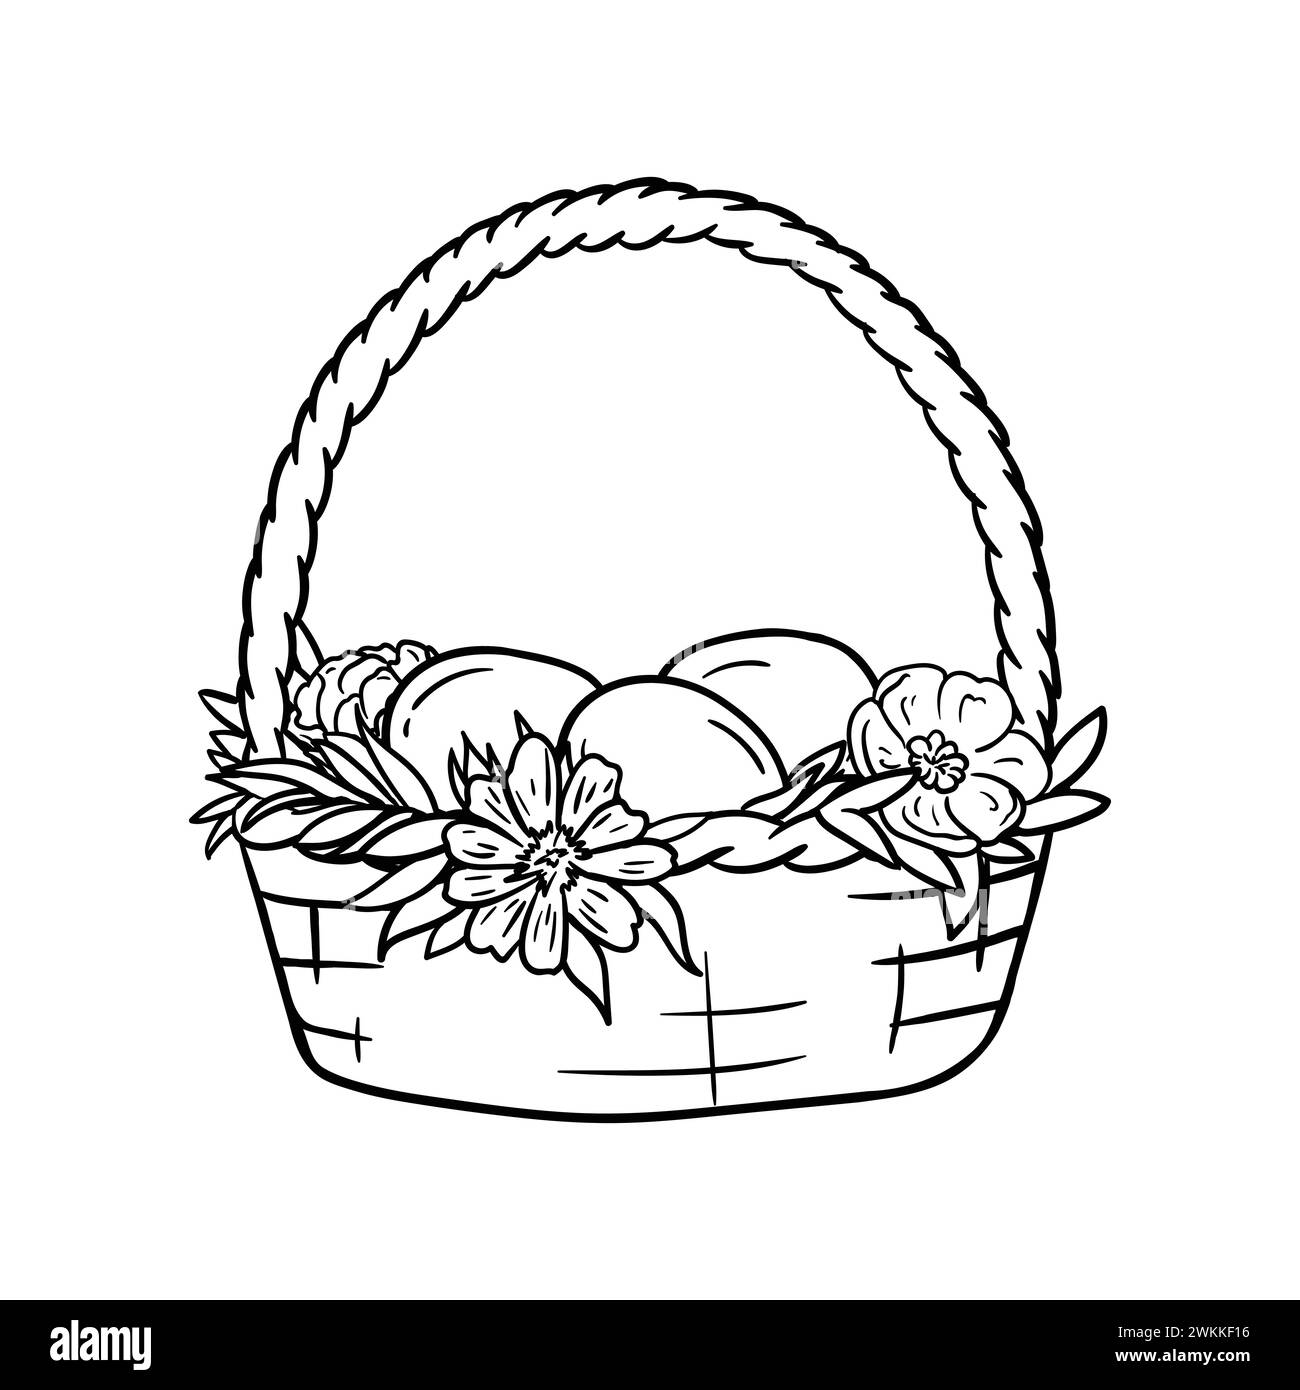 Pagina da colorare con cestino di Pasqua, fiori e uova. Illustrazione vettoriale in bianco e nero. Biglietto d'auguri. Illustrazione Vettoriale